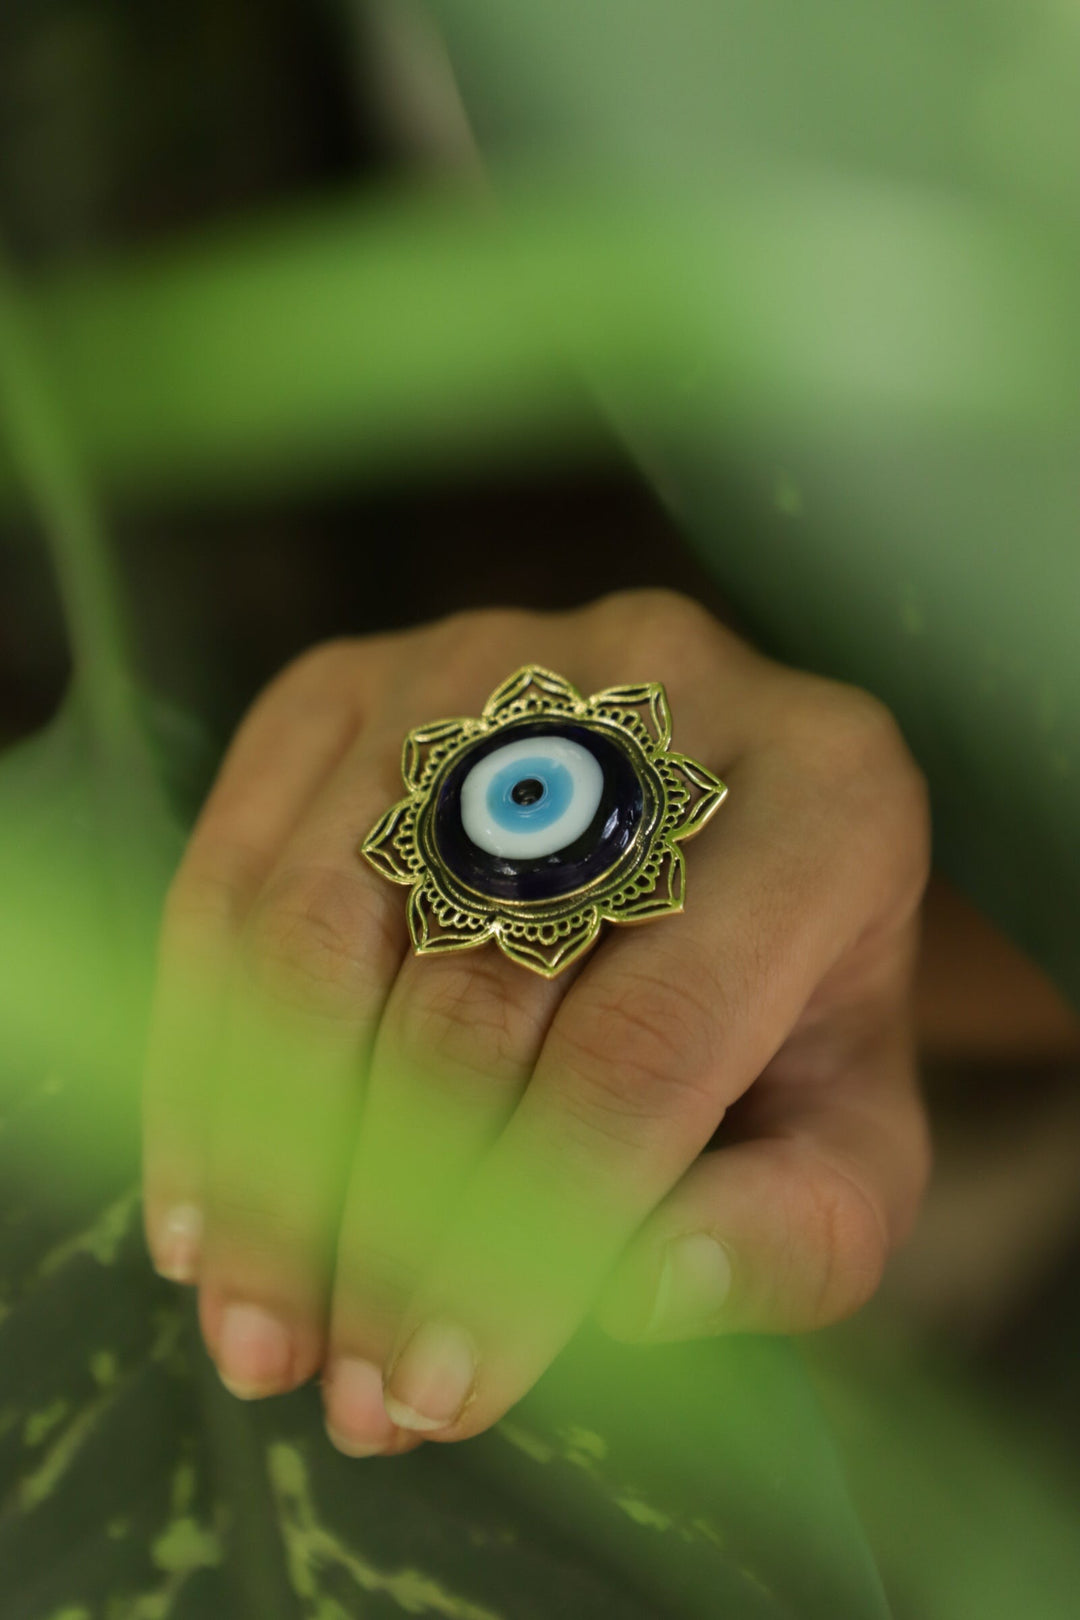 Mandala eye earrings + mandala eye ring combo